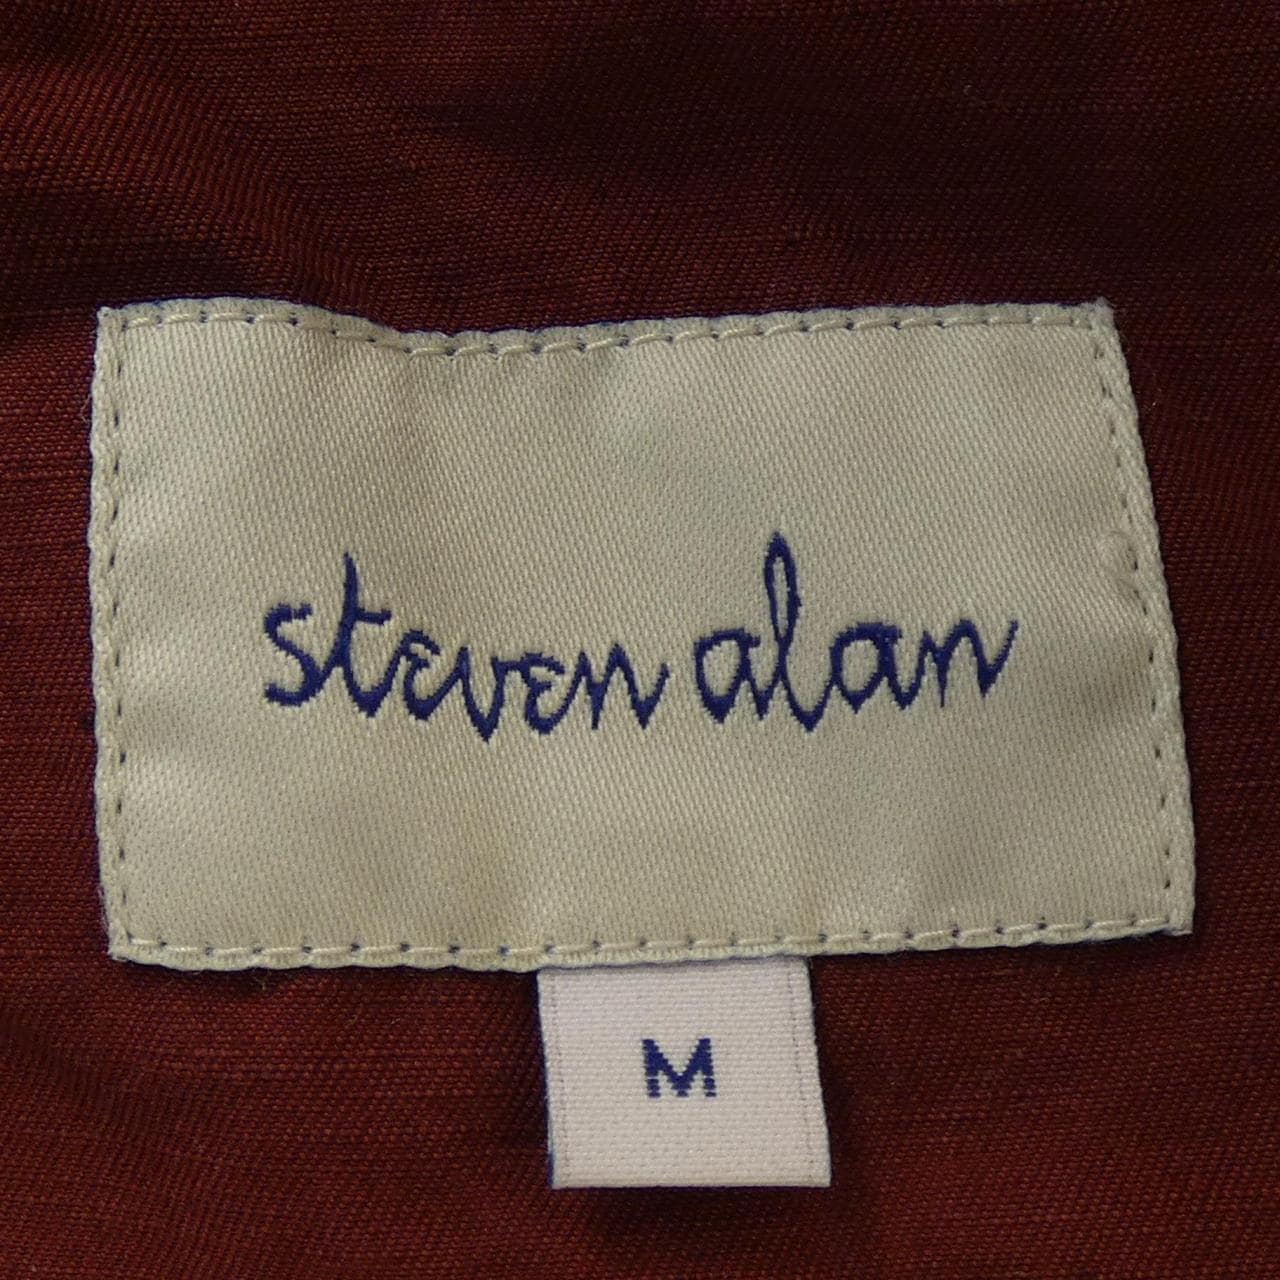 Stephen Alan STEVEN ALAN coat